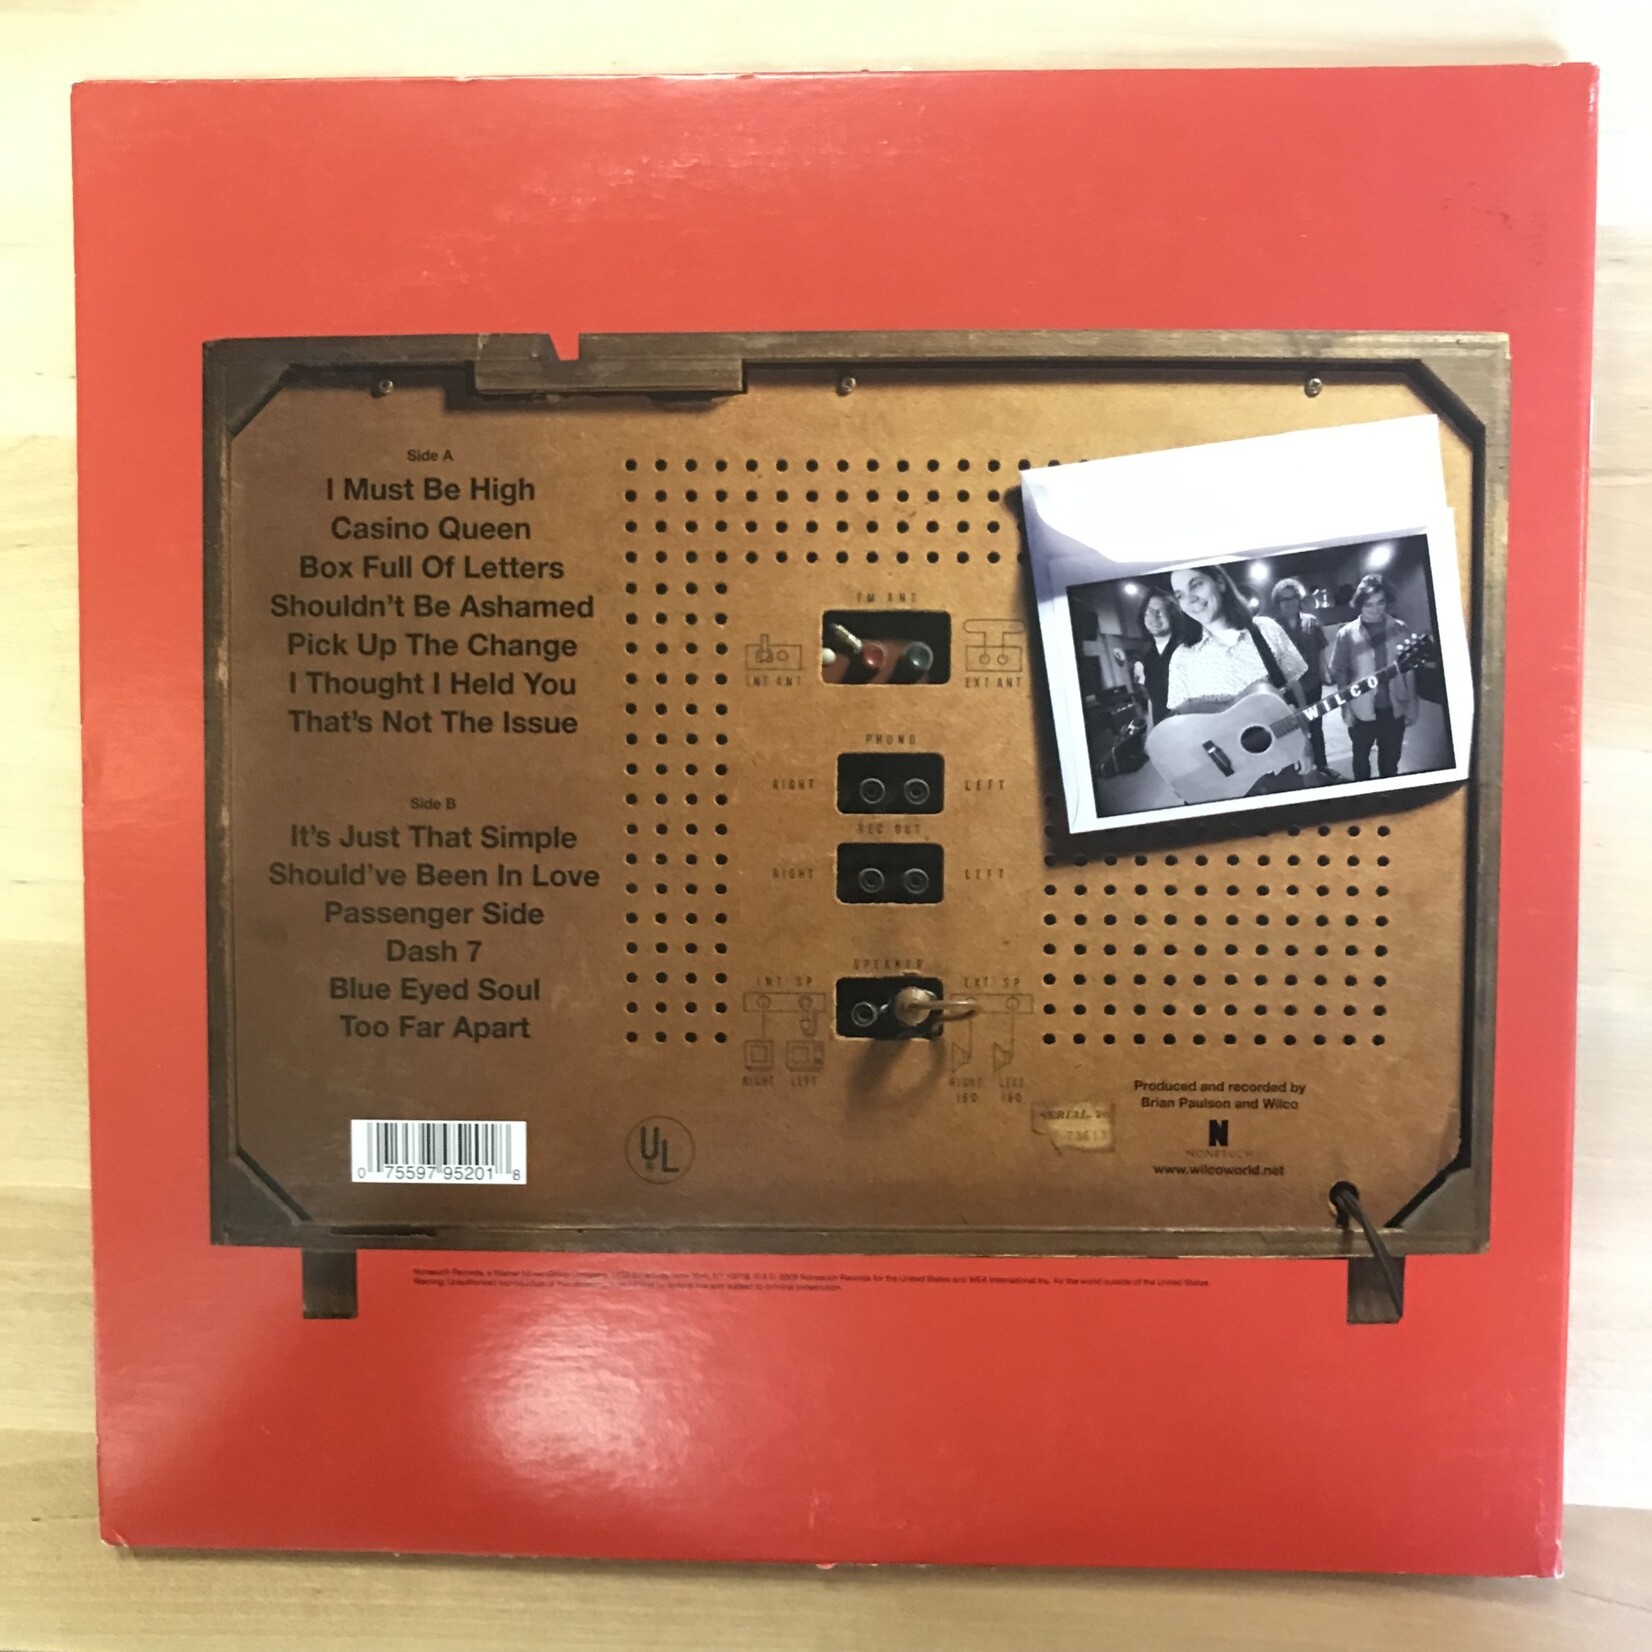 Wilco - A.M. (Orange/Red) - 518084 1 - Vinyl LP (USED)